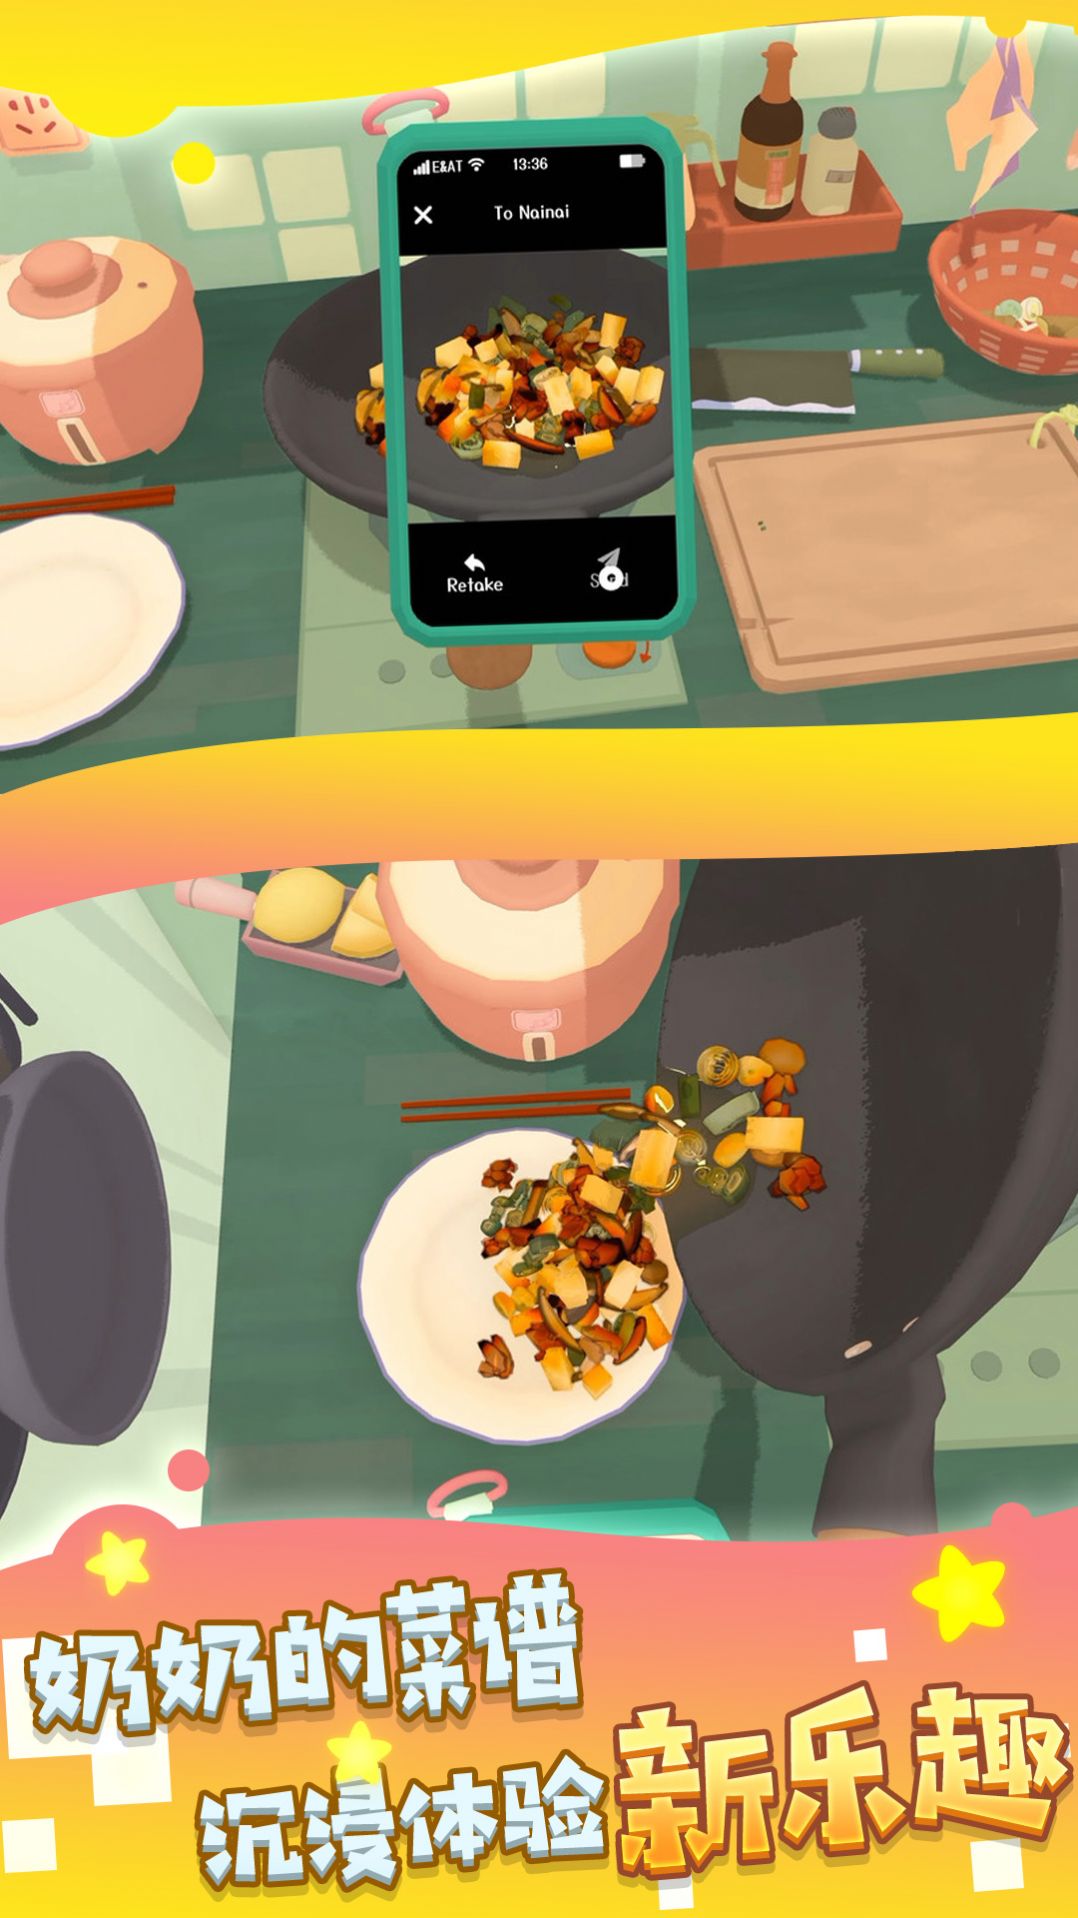 烹饪大师之路最新版安卓游戏 v3.4.18截图1